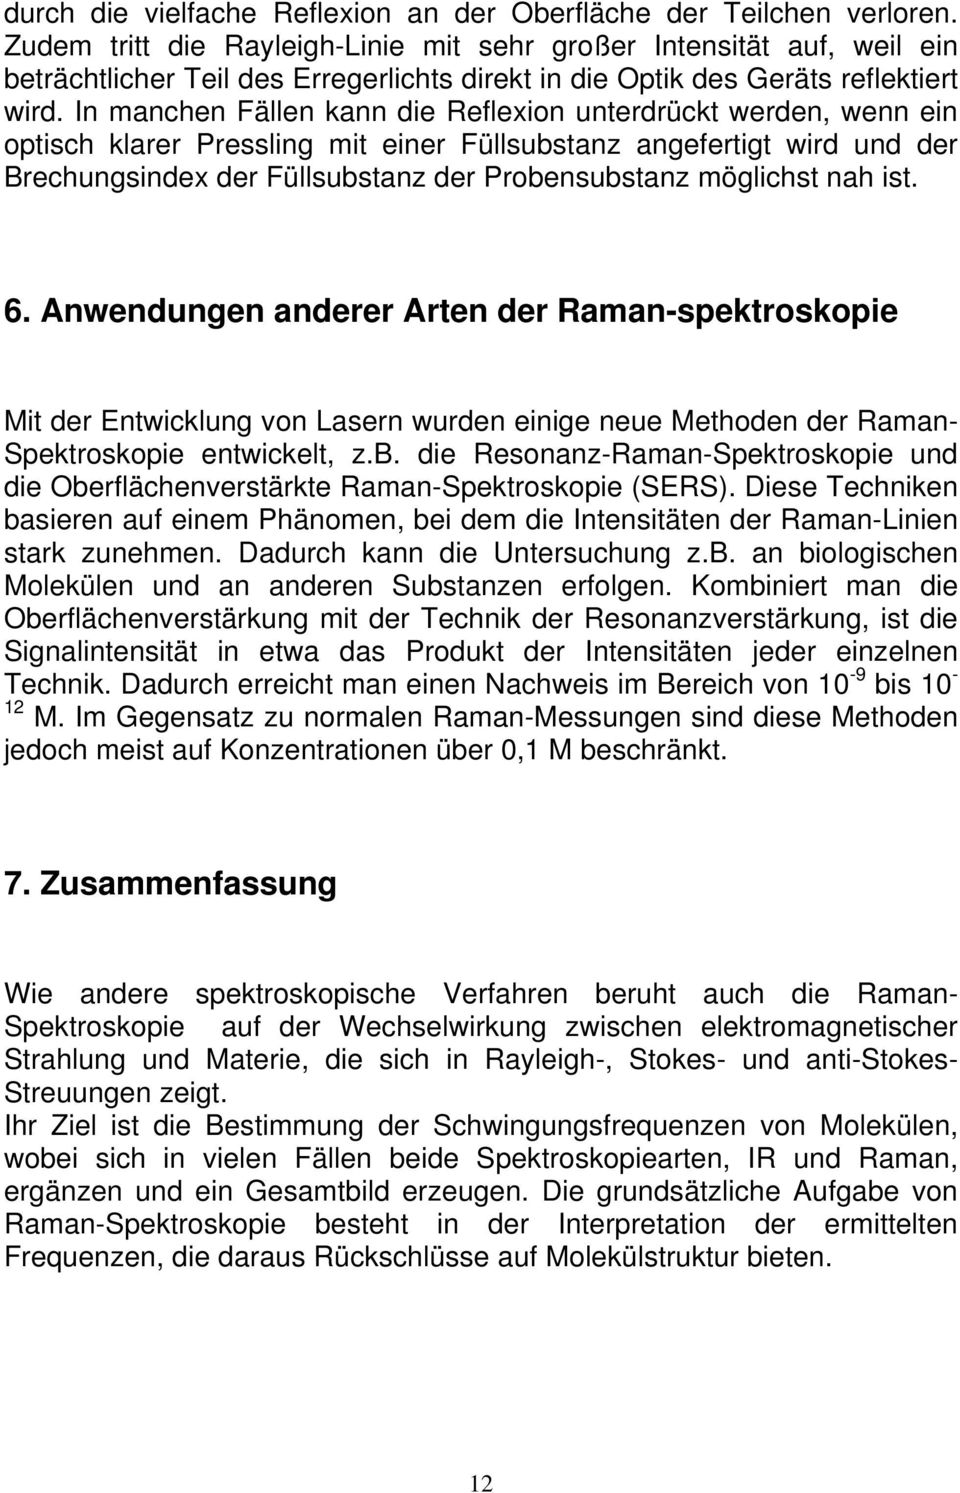 Anwndungn andrr Artn dr Raman-spktroskopi Mit dr Entwicklung von Lasrn wurdn inig nu Mthodn dr Raman- Spktroskopi ntwicklt, z.b.